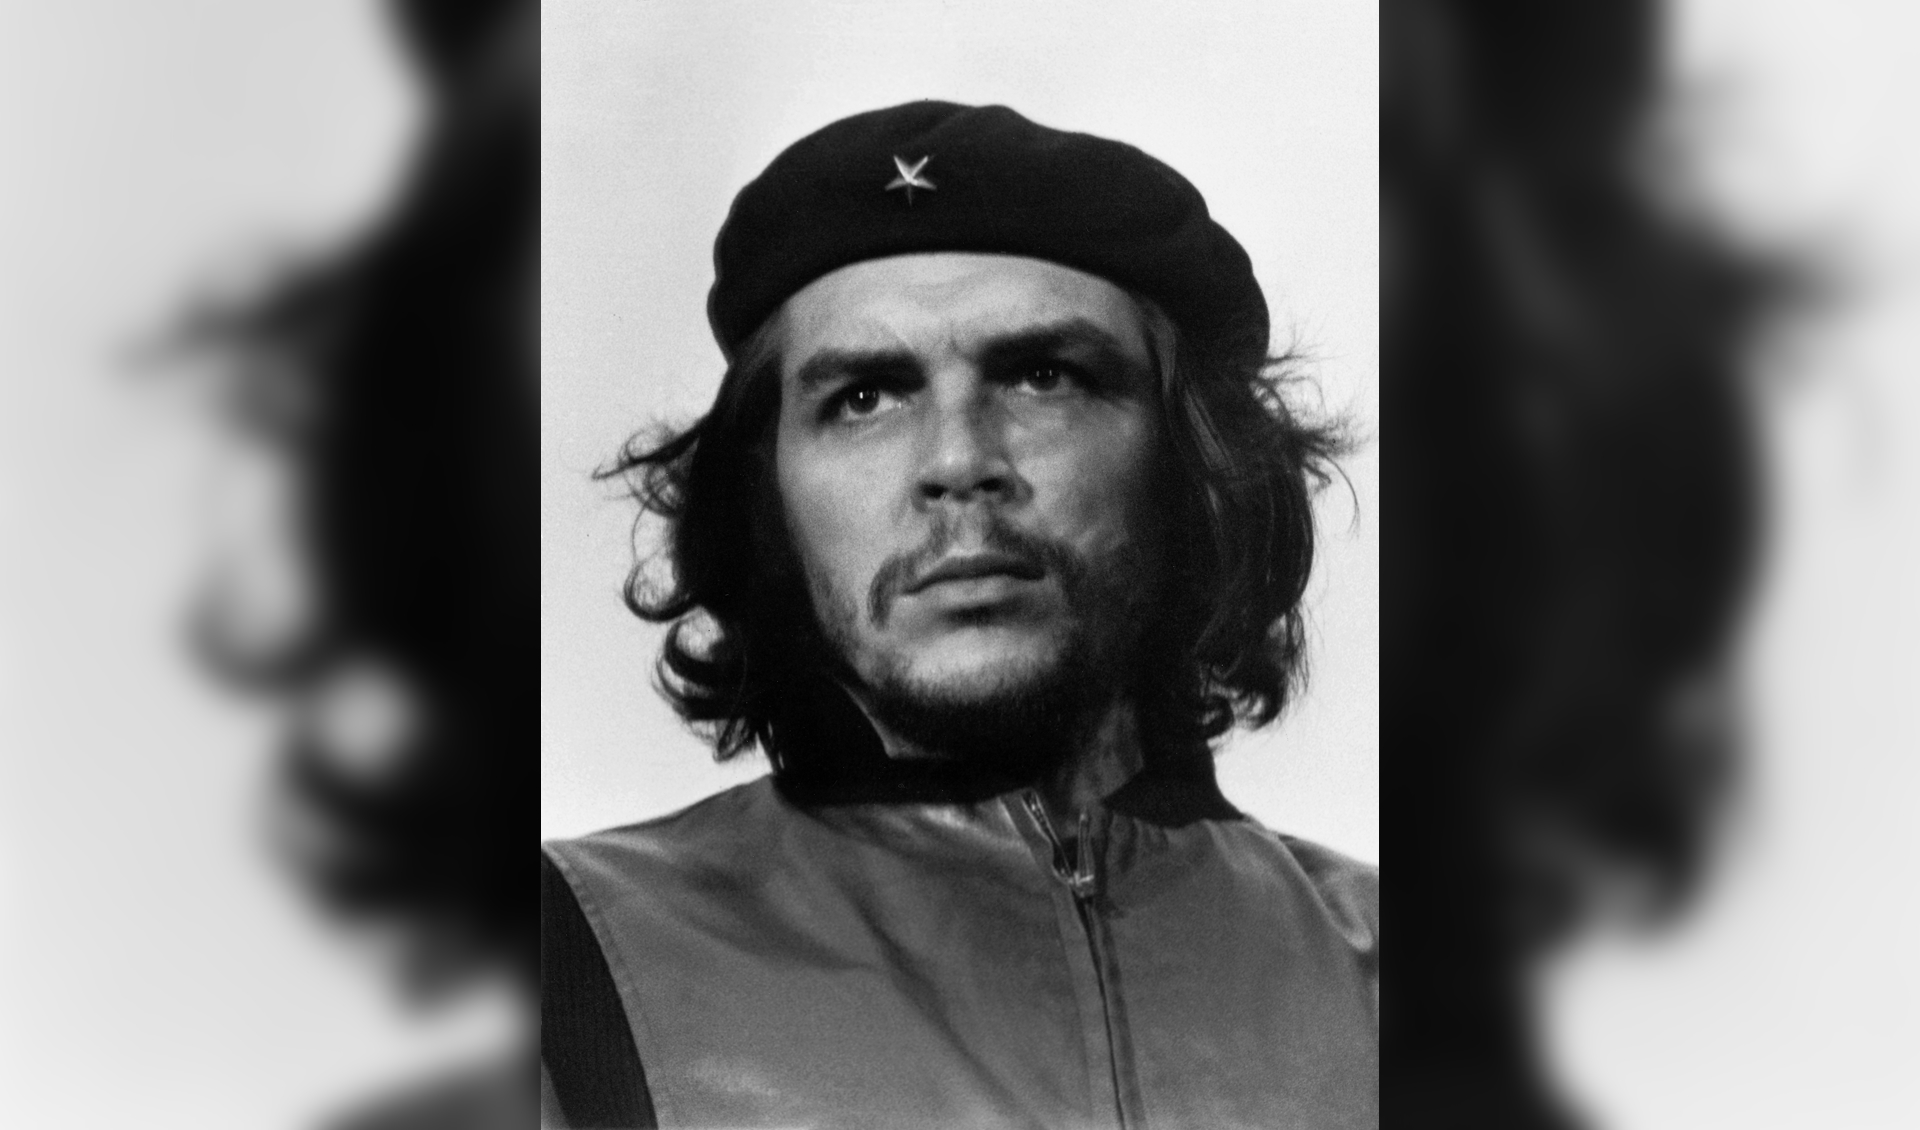 Heroic Guerrilla Fighter. Havana, 5 March 1960. Fotoverzamelaar en fotograaf Pedro Slim leent de originele eerste druk van de foto van Che Guevara uit aan het Cobra Museum.